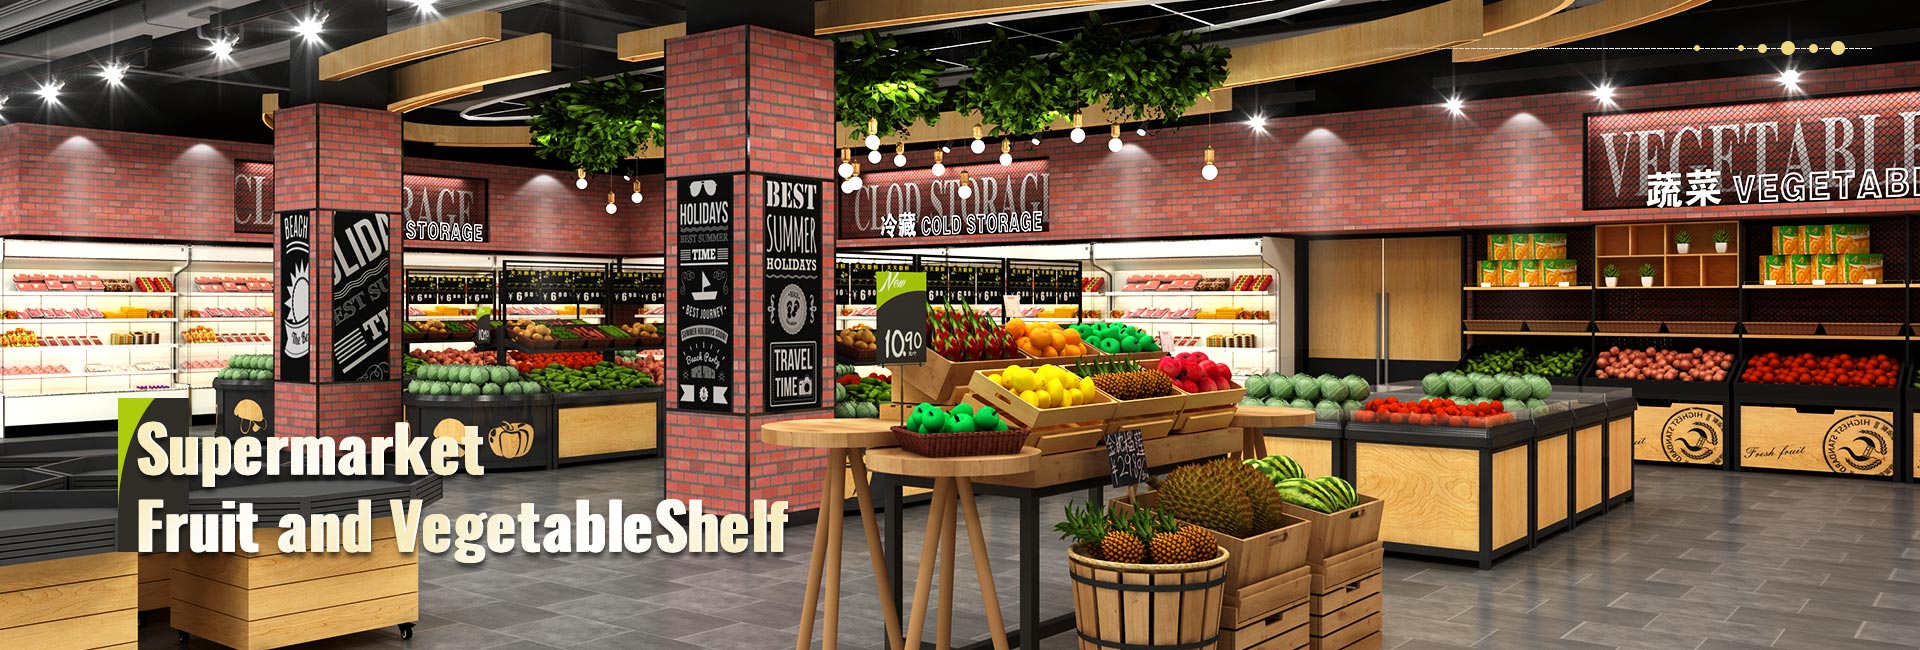 슈퍼마켓 과일 및 야채